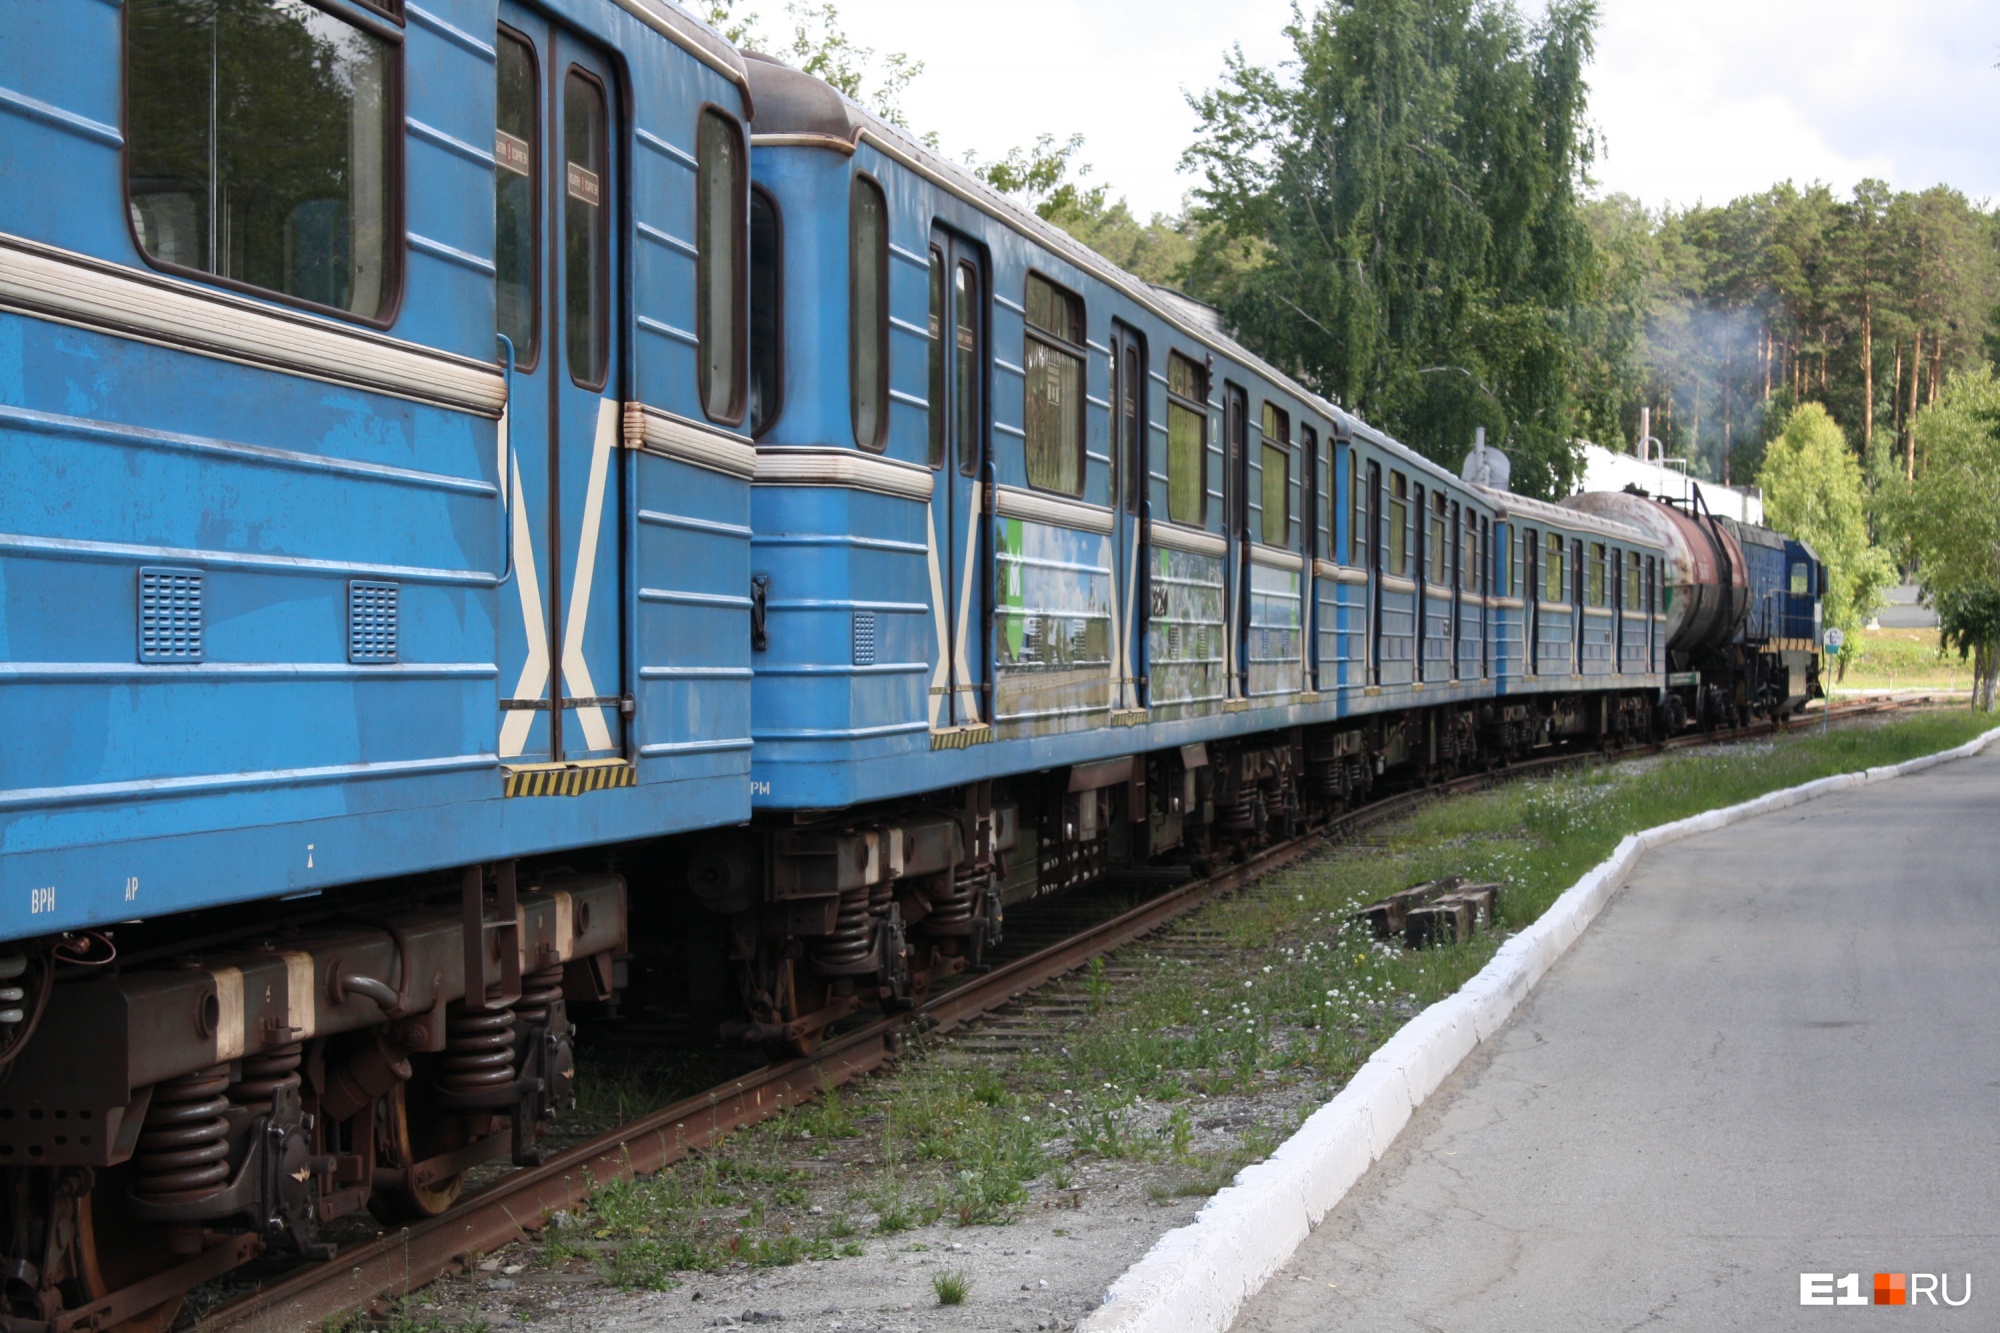 Очередные старые вагоны отправили в Санкт-Петербург, скоро они будут выглядеть как новые